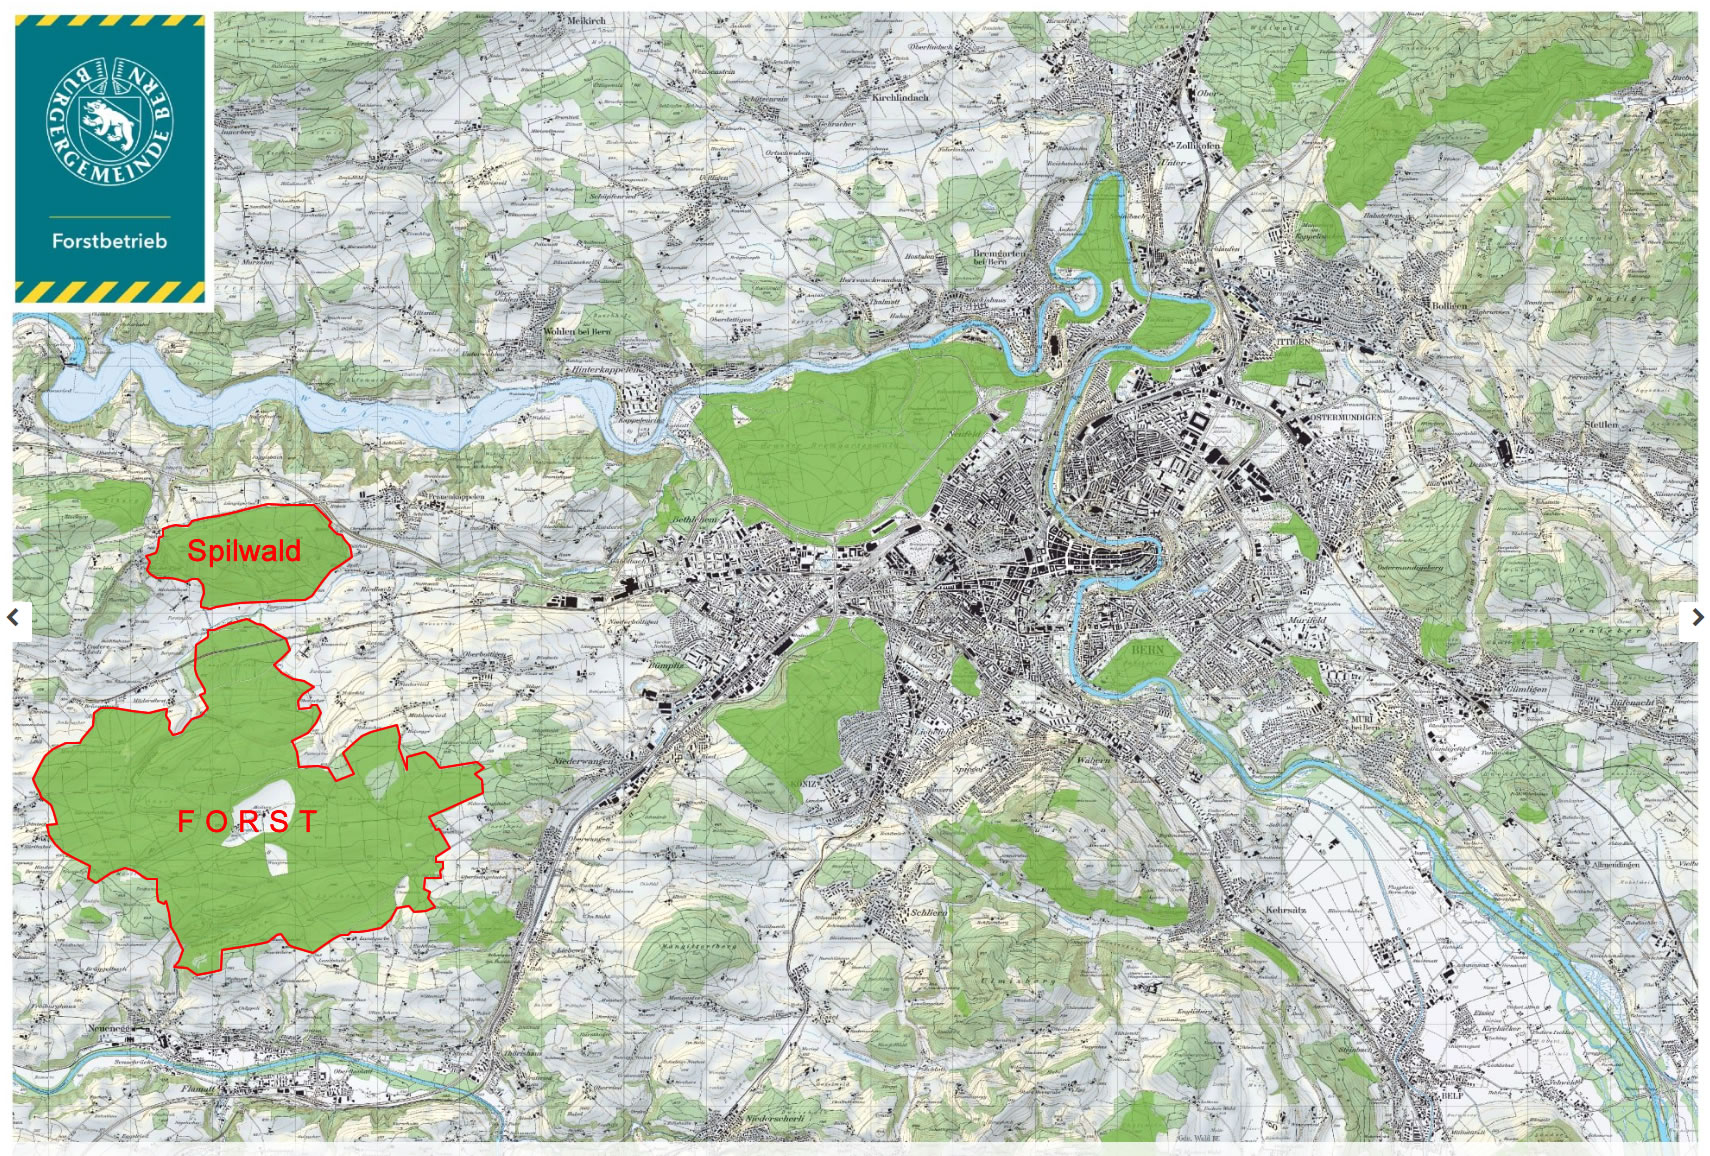 Karte Forst und Spilwald